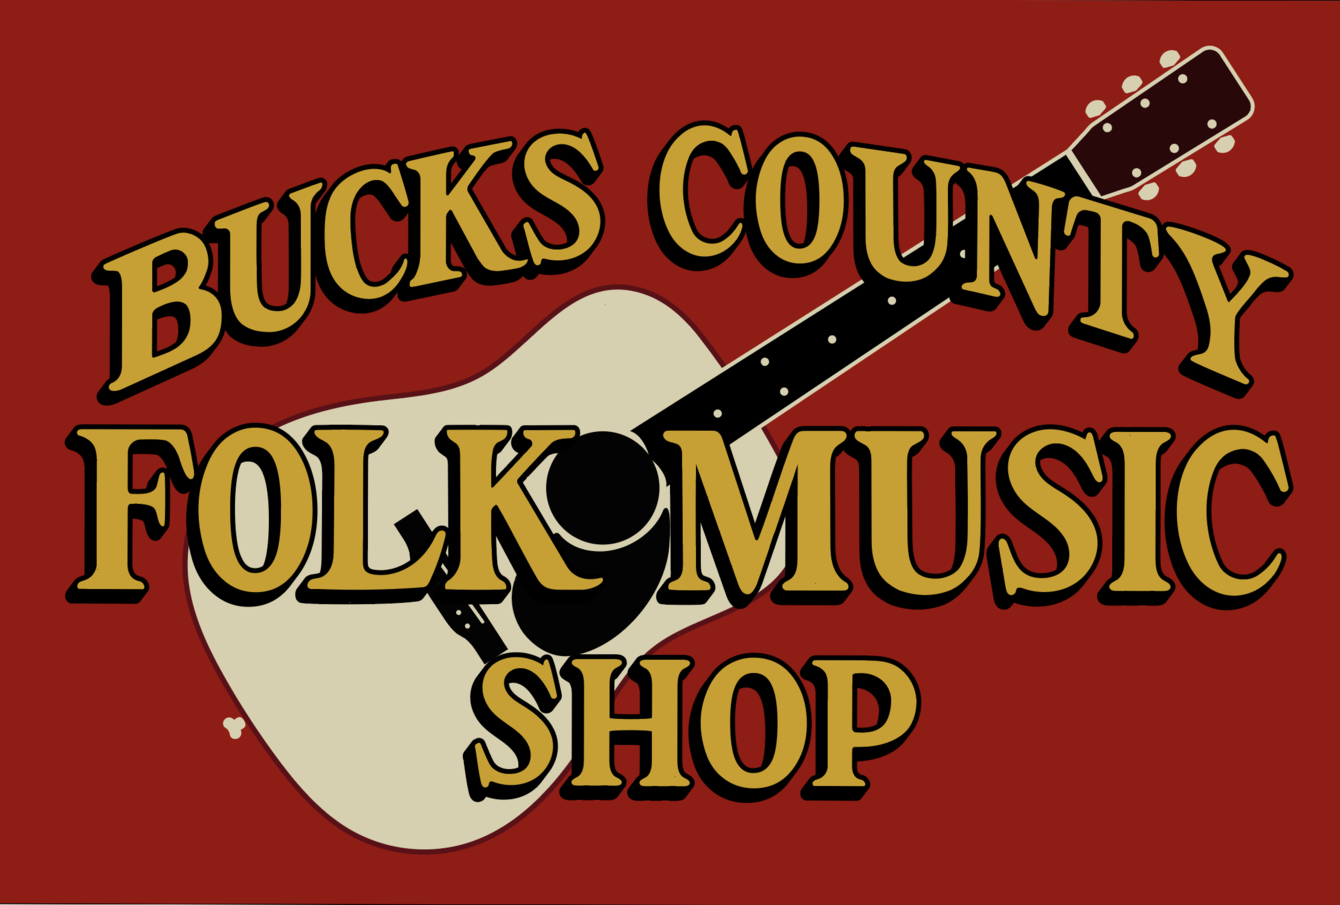 Bucks County Folk Music Shop